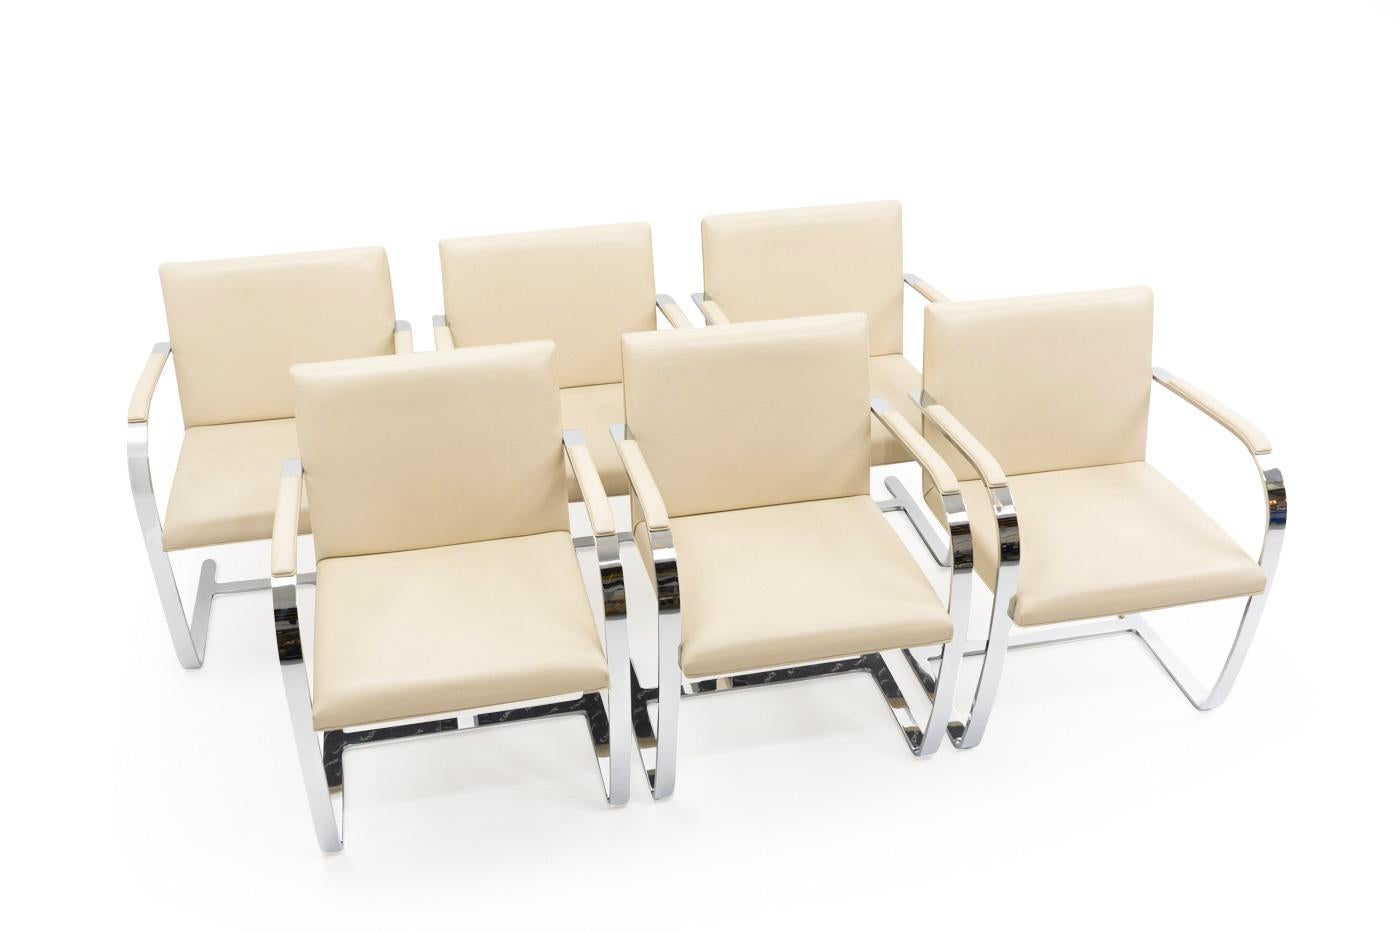 Ensemble de six chaises BRNO de Ludwig Mies van der Rohe, produites par Knoll dans les années 1990.

Ces chaises en porte-à-faux ont été conçues dans les années 1930 pour être utilisées dans la salle à manger de la villa Tugendhat, située à